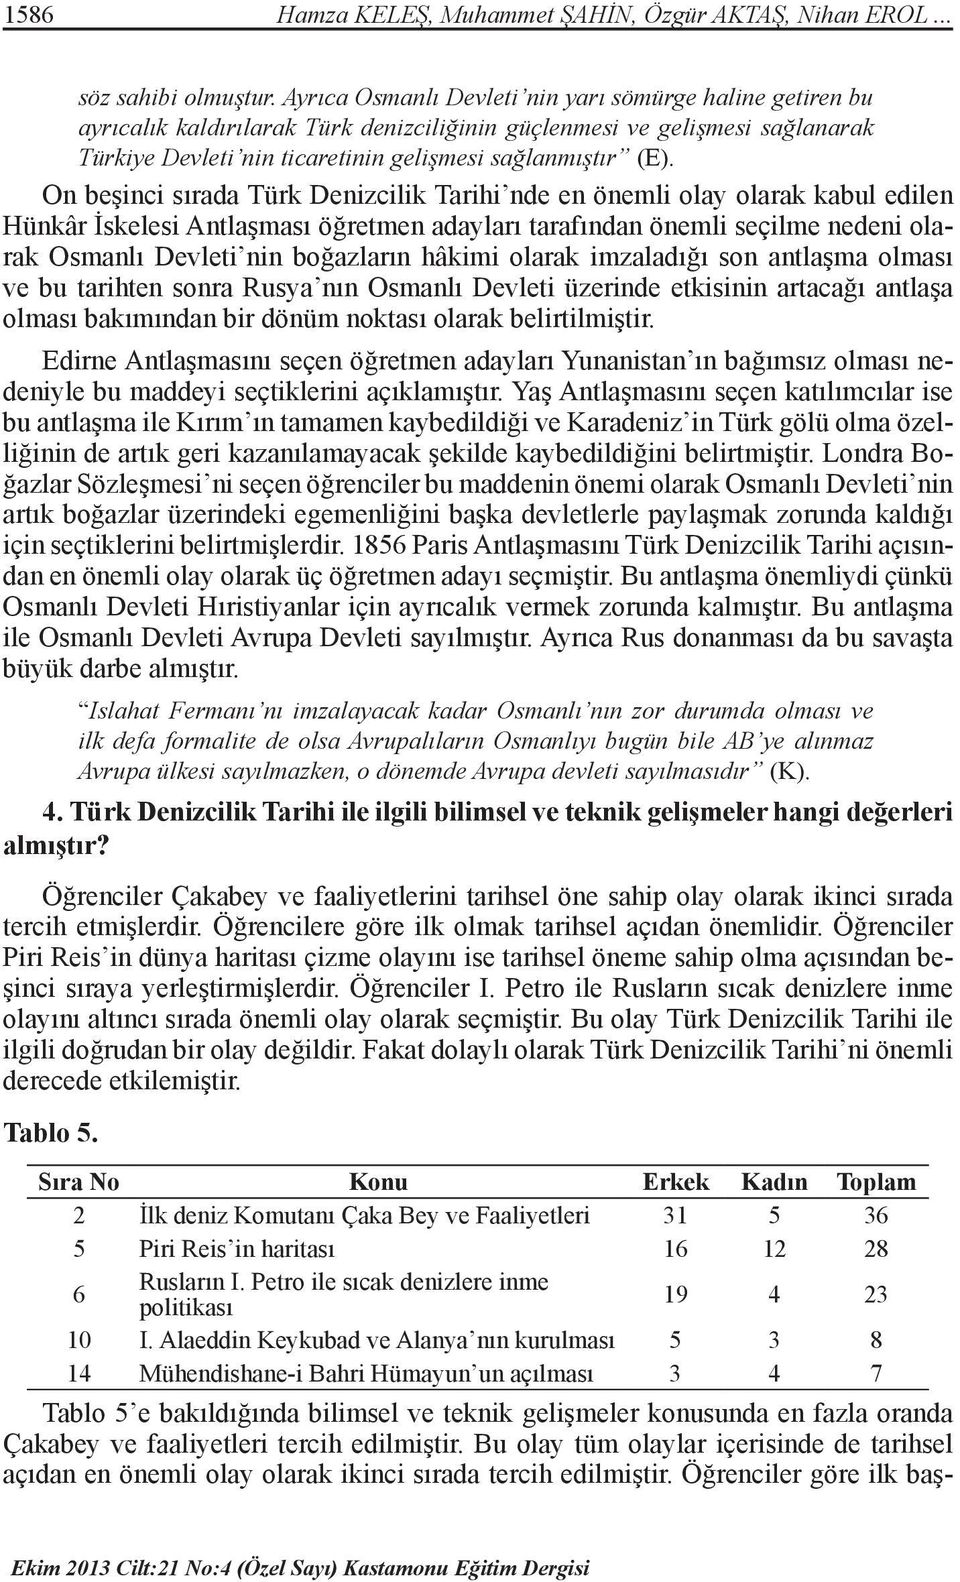 On beşinci sırada Türk Denizcilik Tarihi nde en önemli olay olarak kabul edilen Hünkâr İskelesi Antlaşması öğretmen adayları tarafından önemli seçilme nedeni olarak Osmanlı Devleti nin boğazların